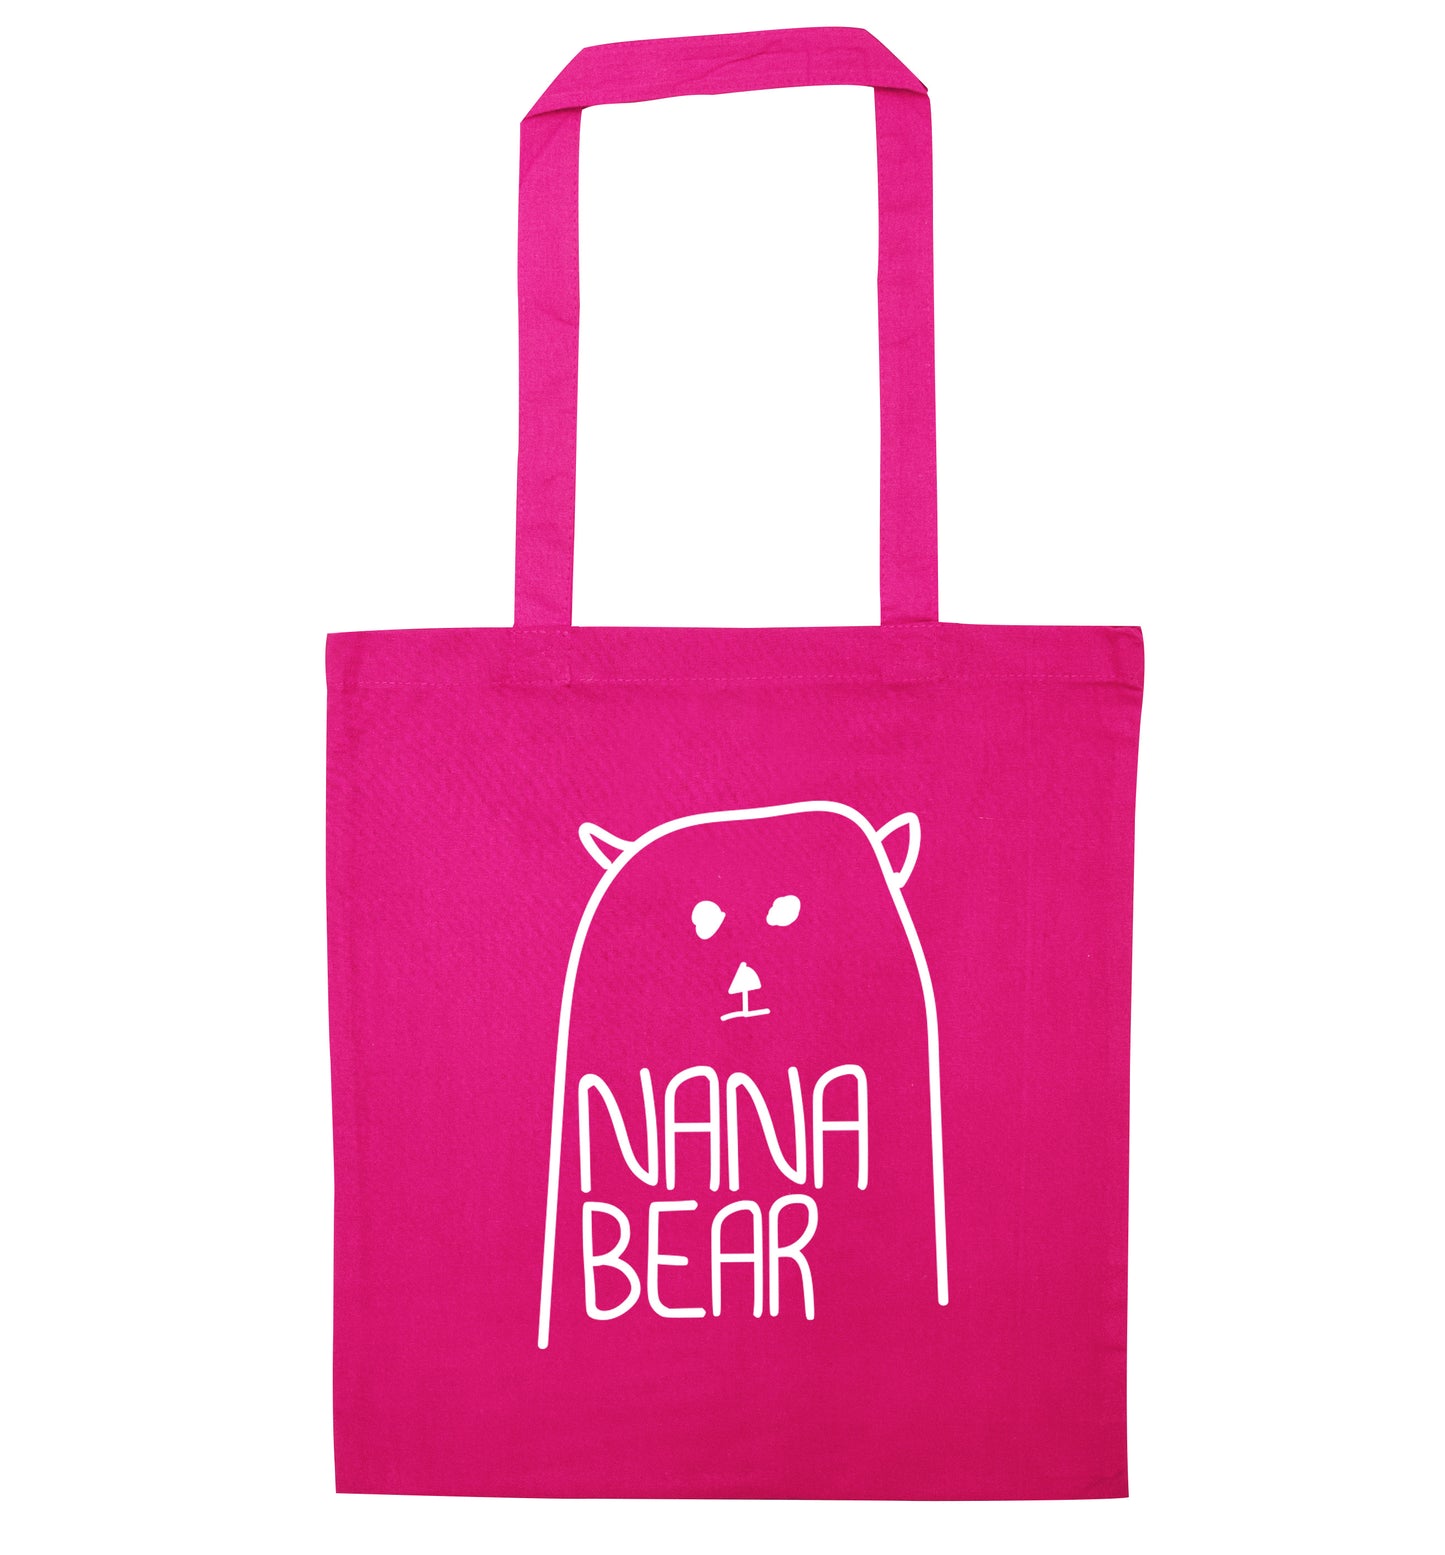 Nana bear pink tote bag